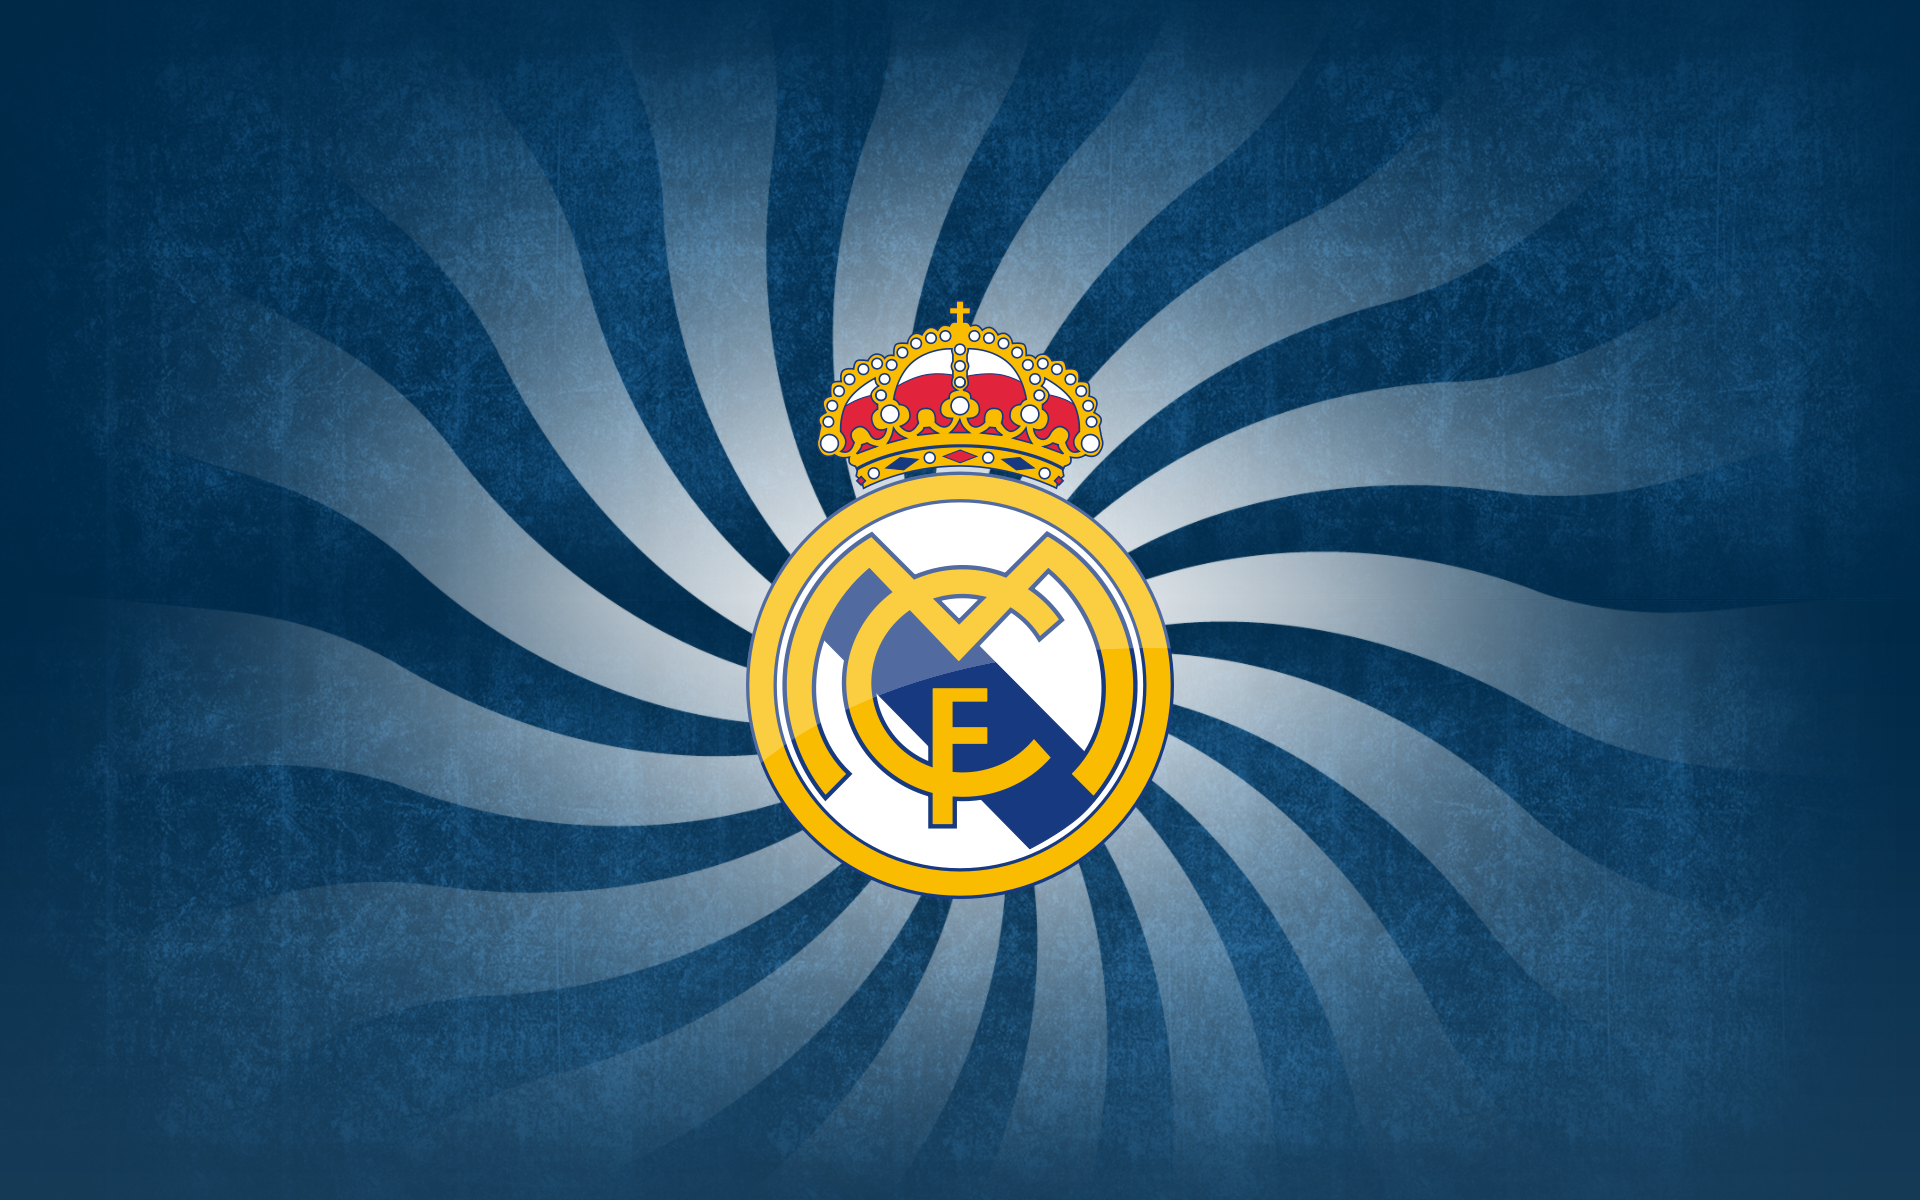 Thiết kế logo đội câu lạc bộ bóng đá Real Madrid 2K tải xuống hình nền